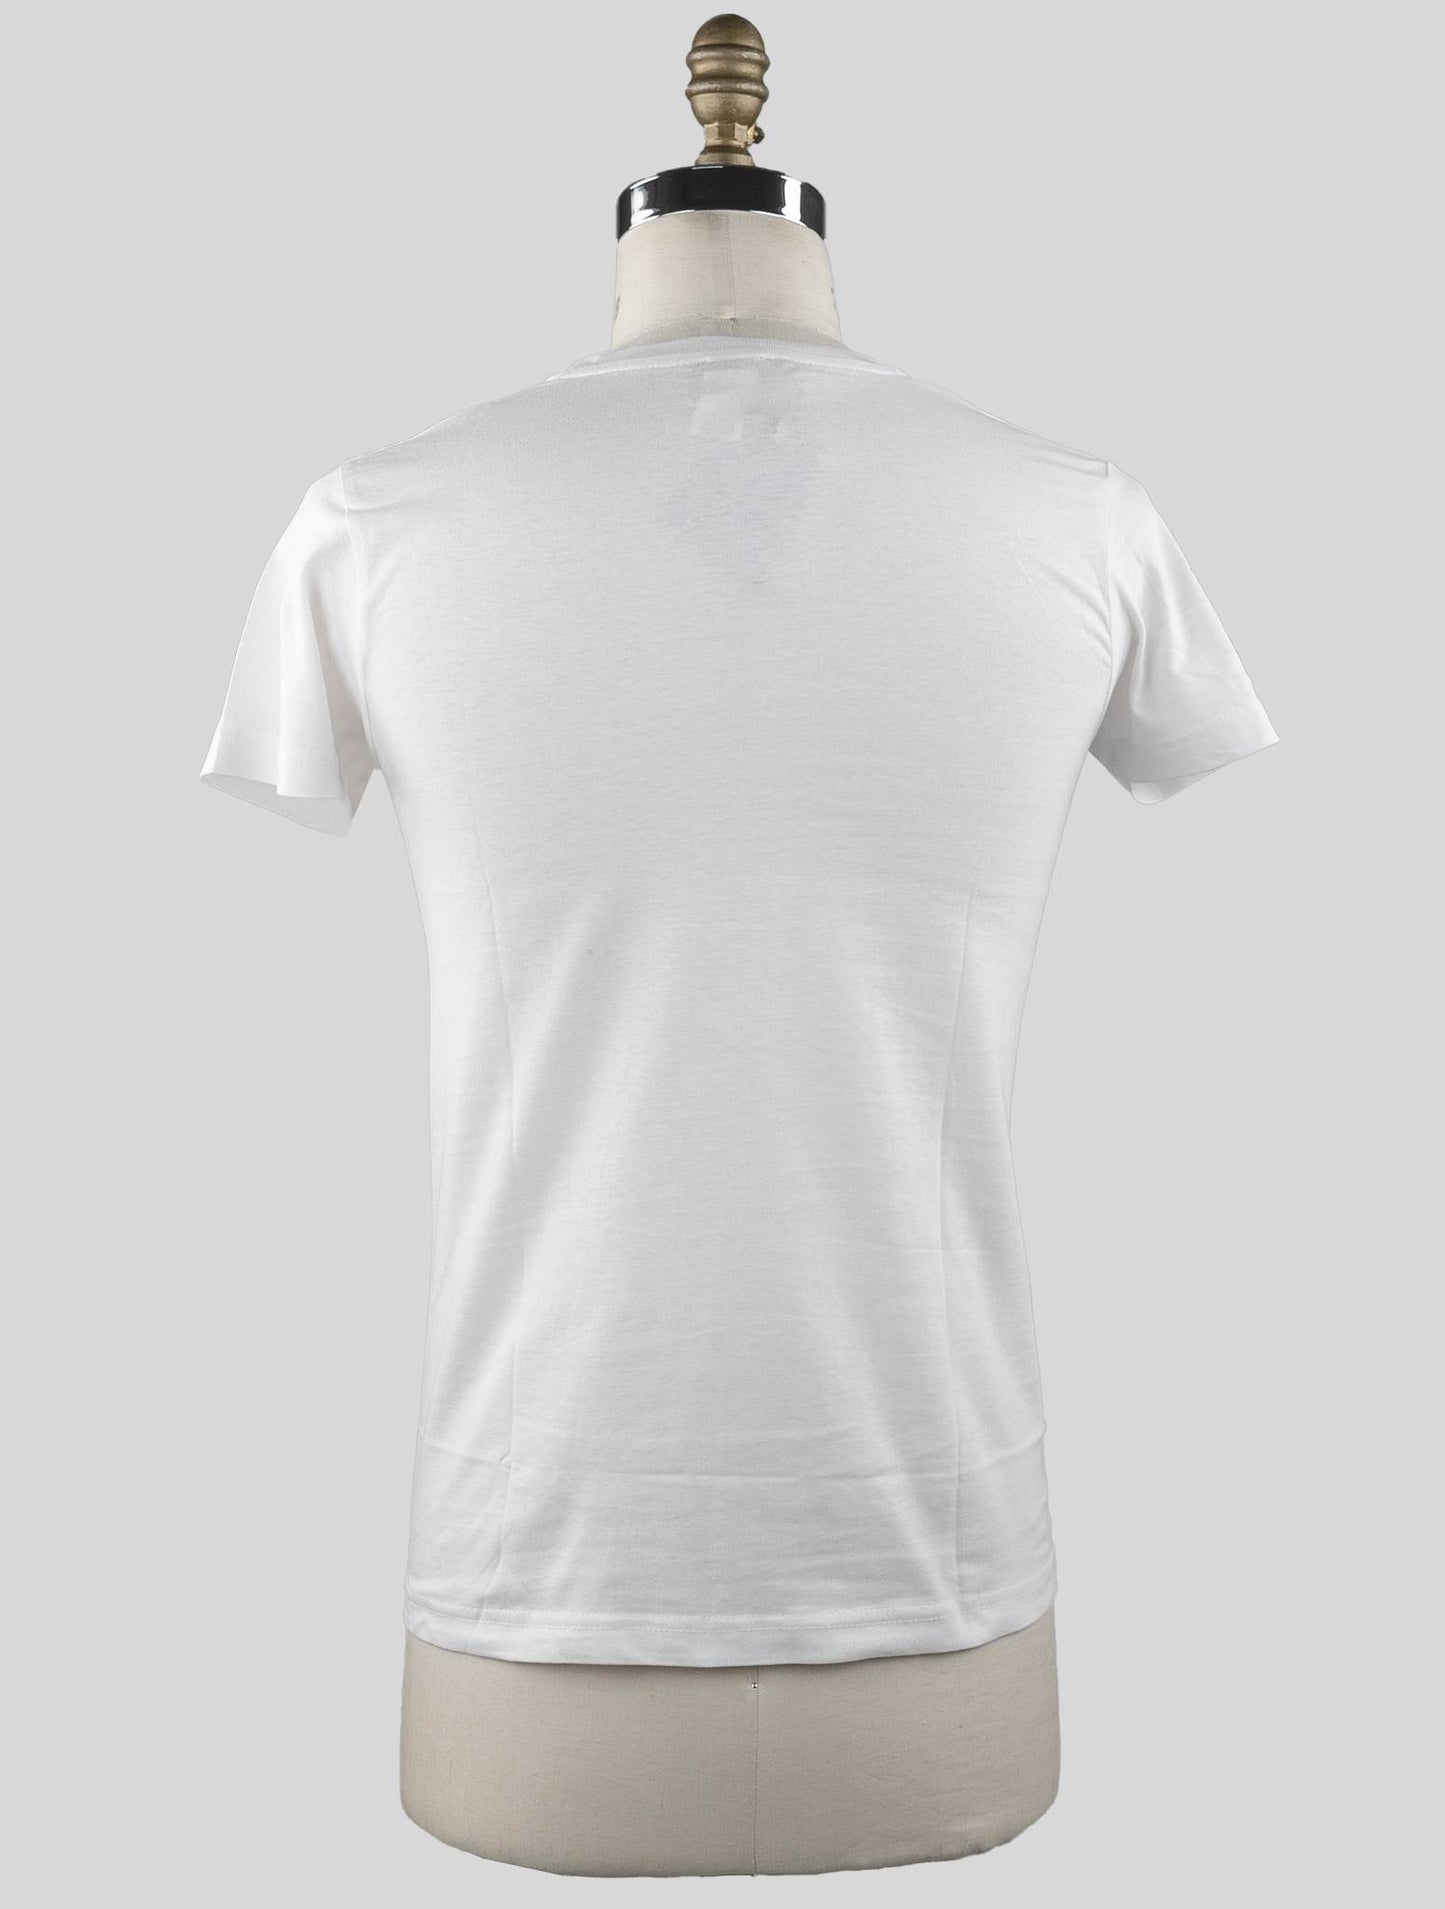 Sartorio Napoli Camiseta Algodón Blanca Edición Especial